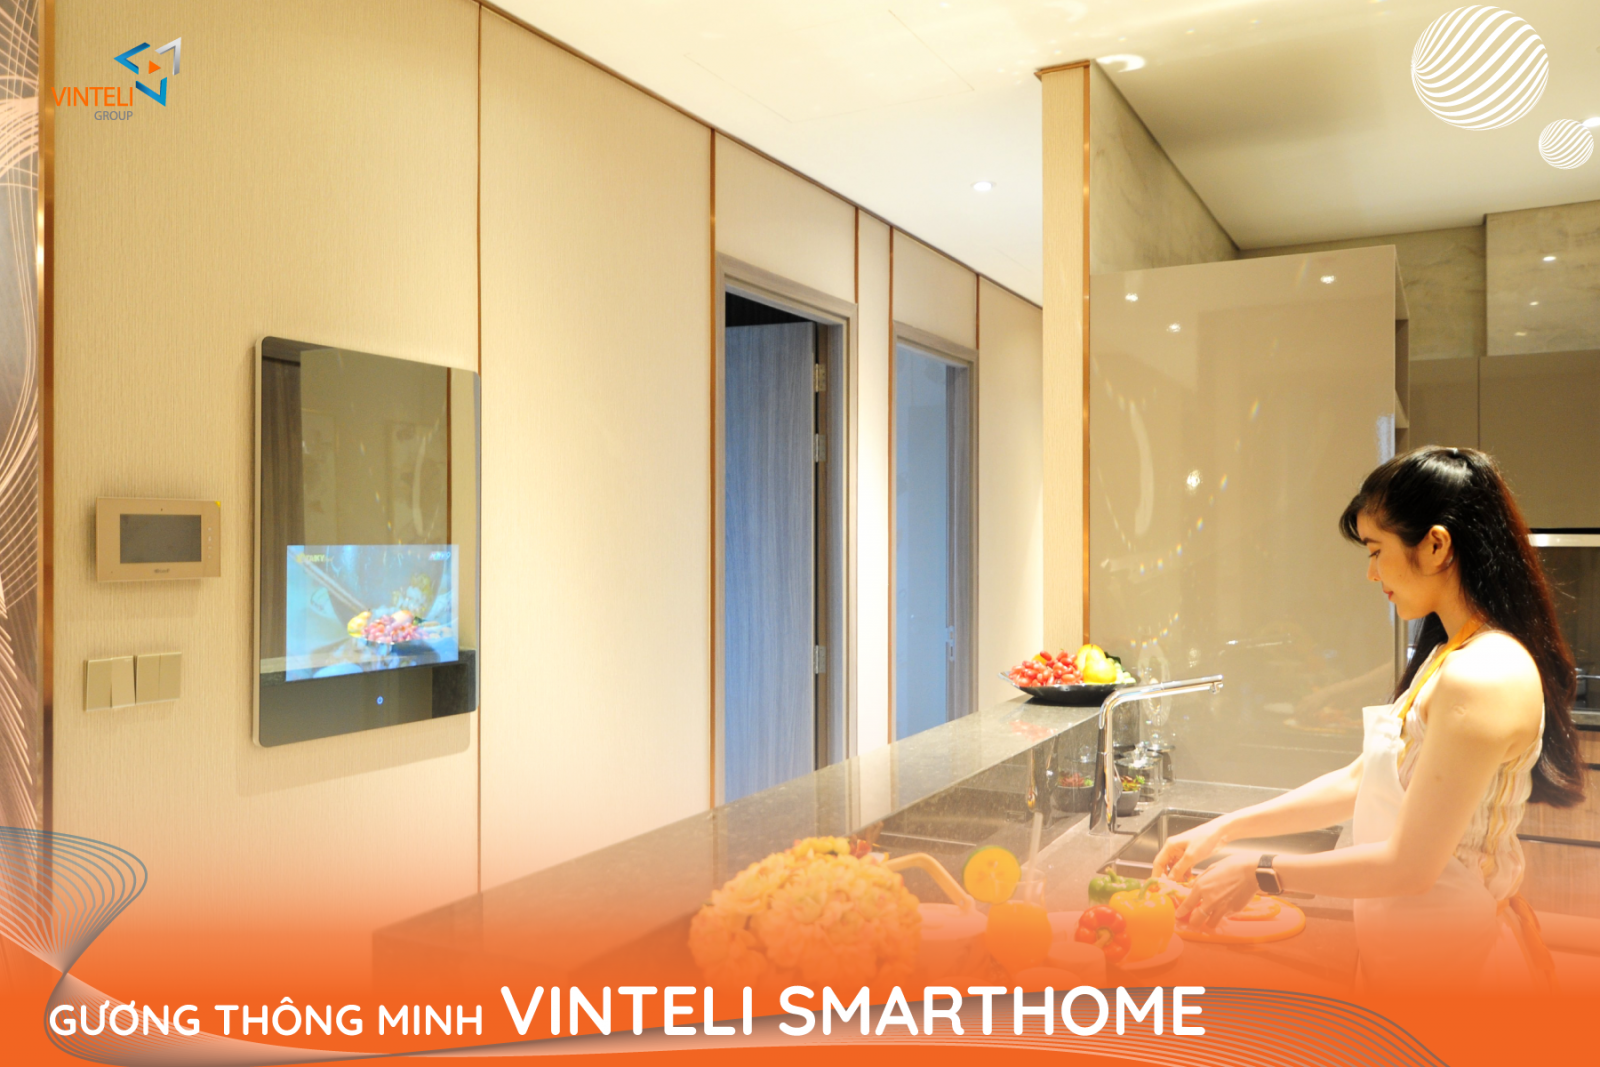 Gương thông minh Vinteli Smarthome ấn tượng với tính năng hiện đại cùng thiết kế tinh tế